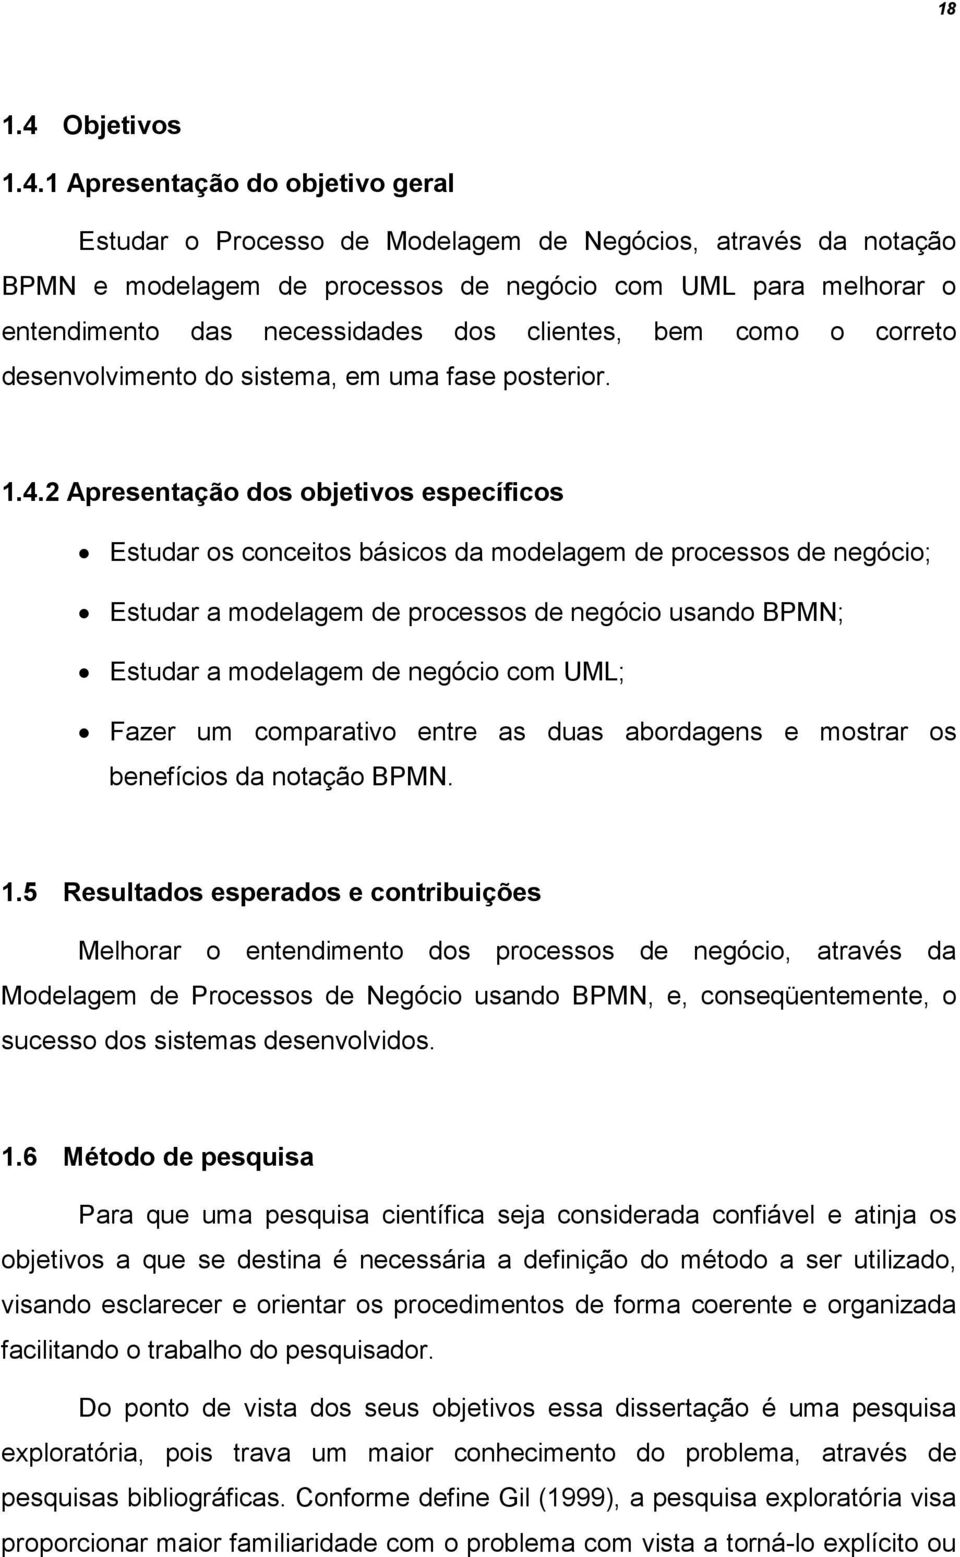 1 Apresentação do objetivo geral Estudar o Processo de Modelagem de Negócios, através da notação BPMN e modelagem de processos de negócio com UML para melhorar o entendimento das necessidades dos